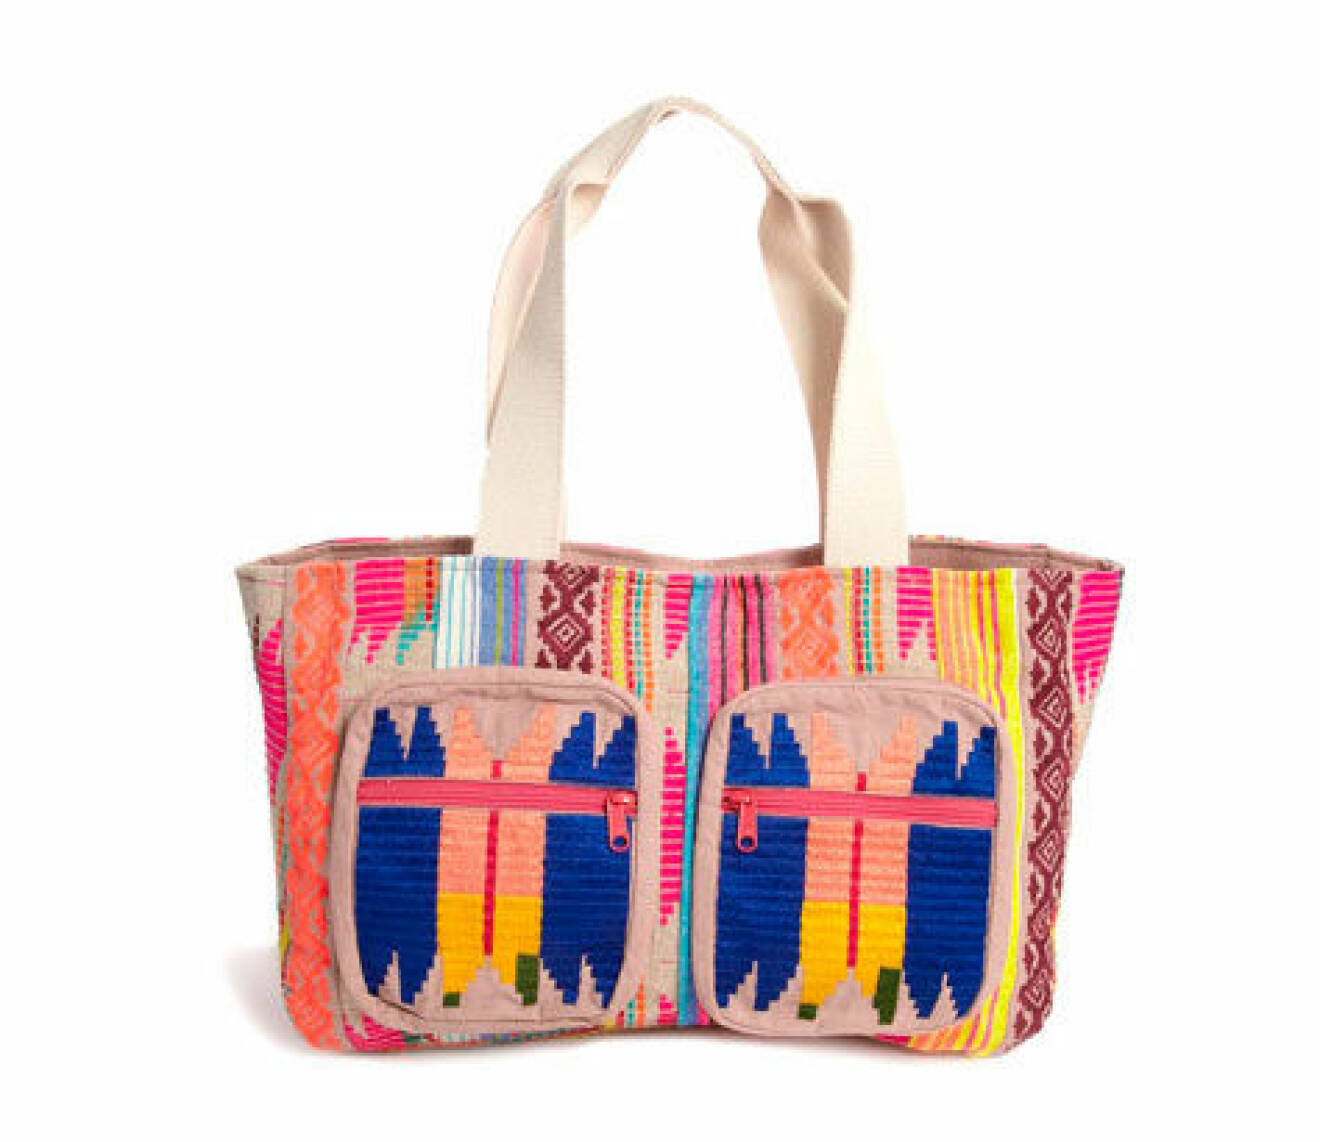  Aztec-mönstrad väska, ca 500 kr, asos.